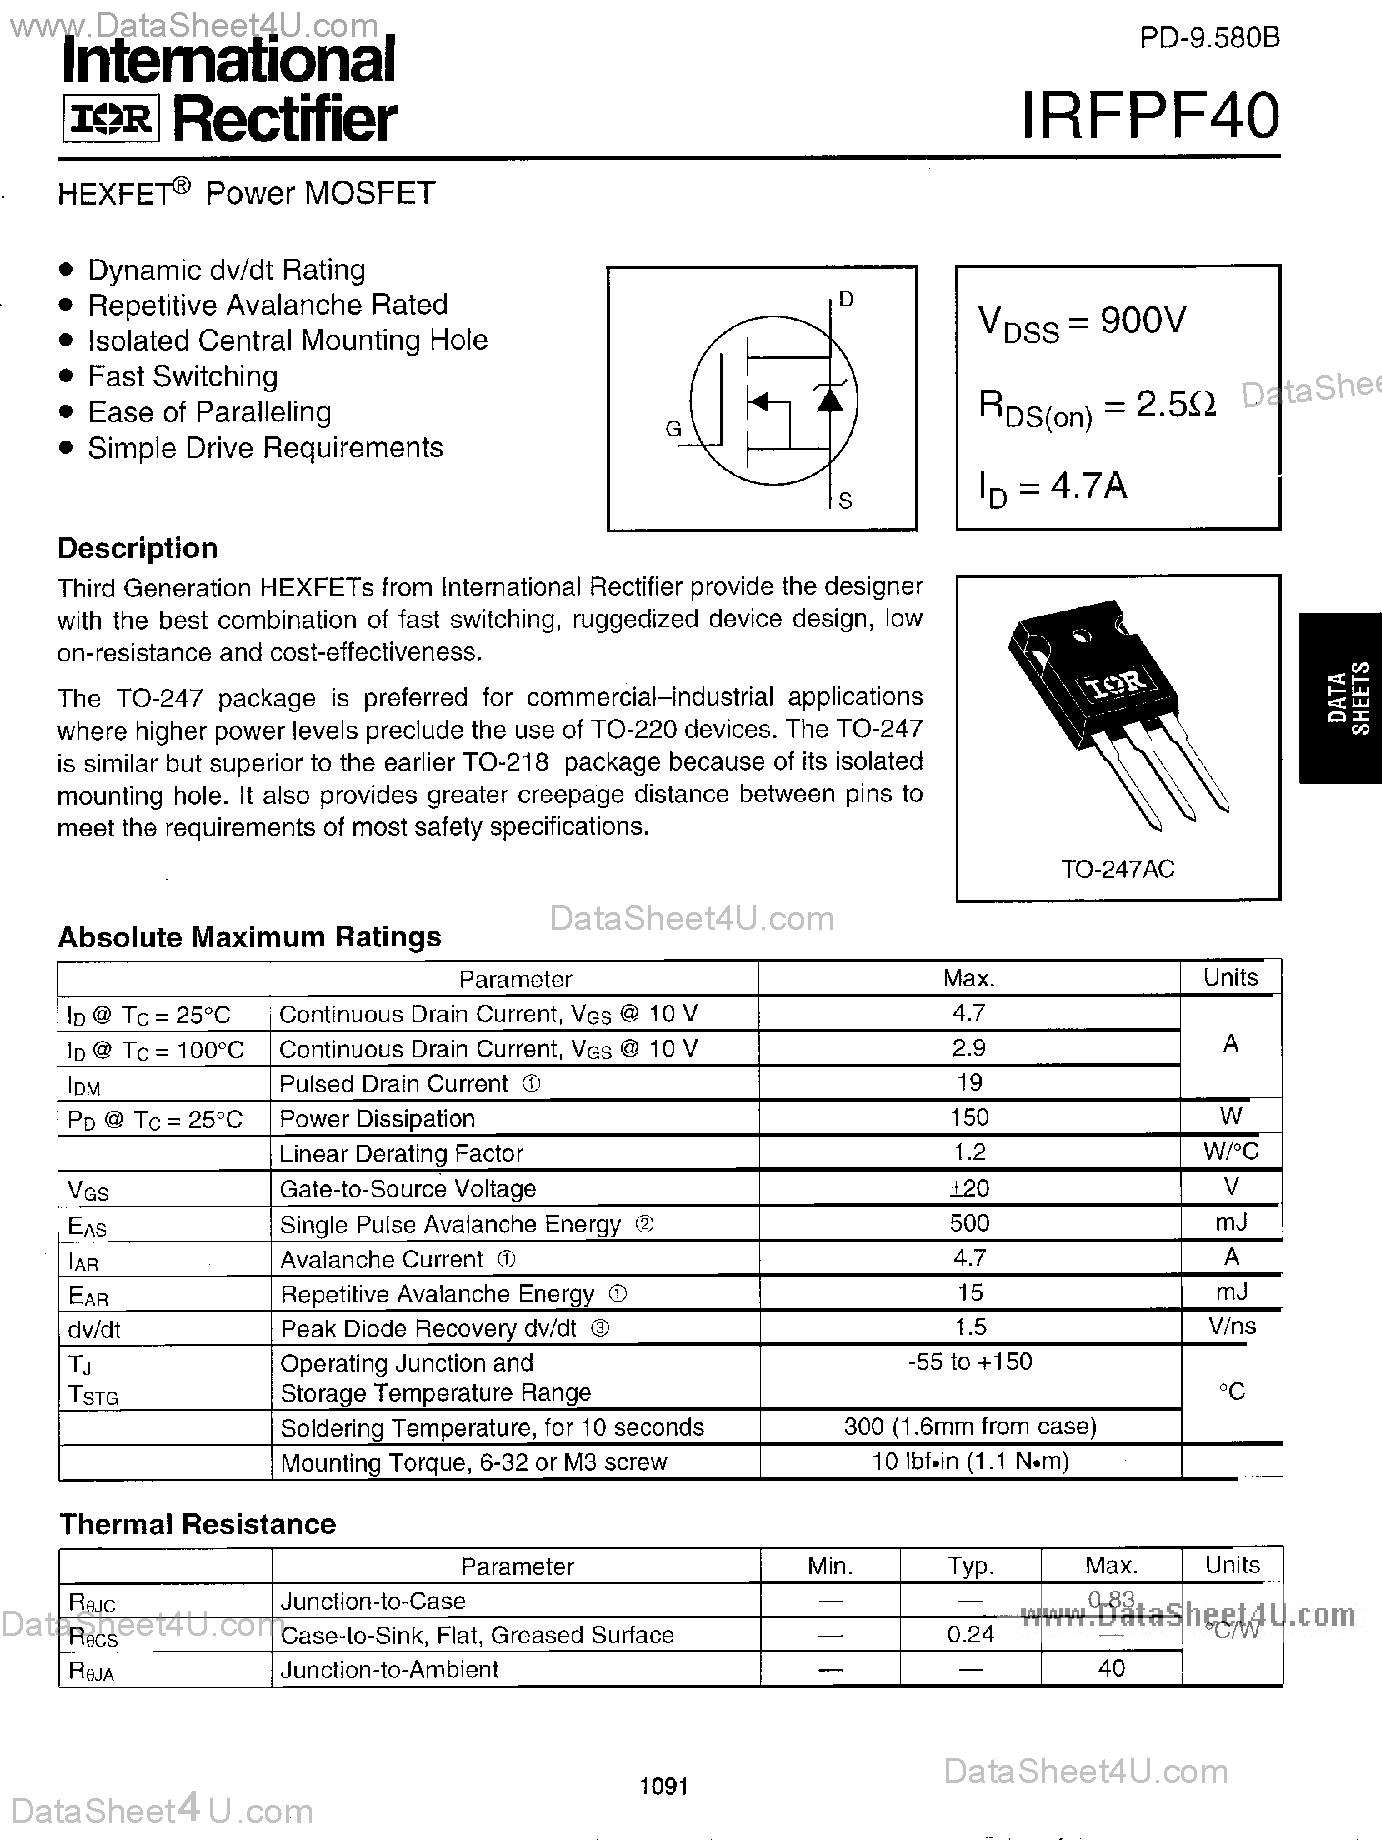 Даташит IRFPF40 - Power MOSFET страница 1